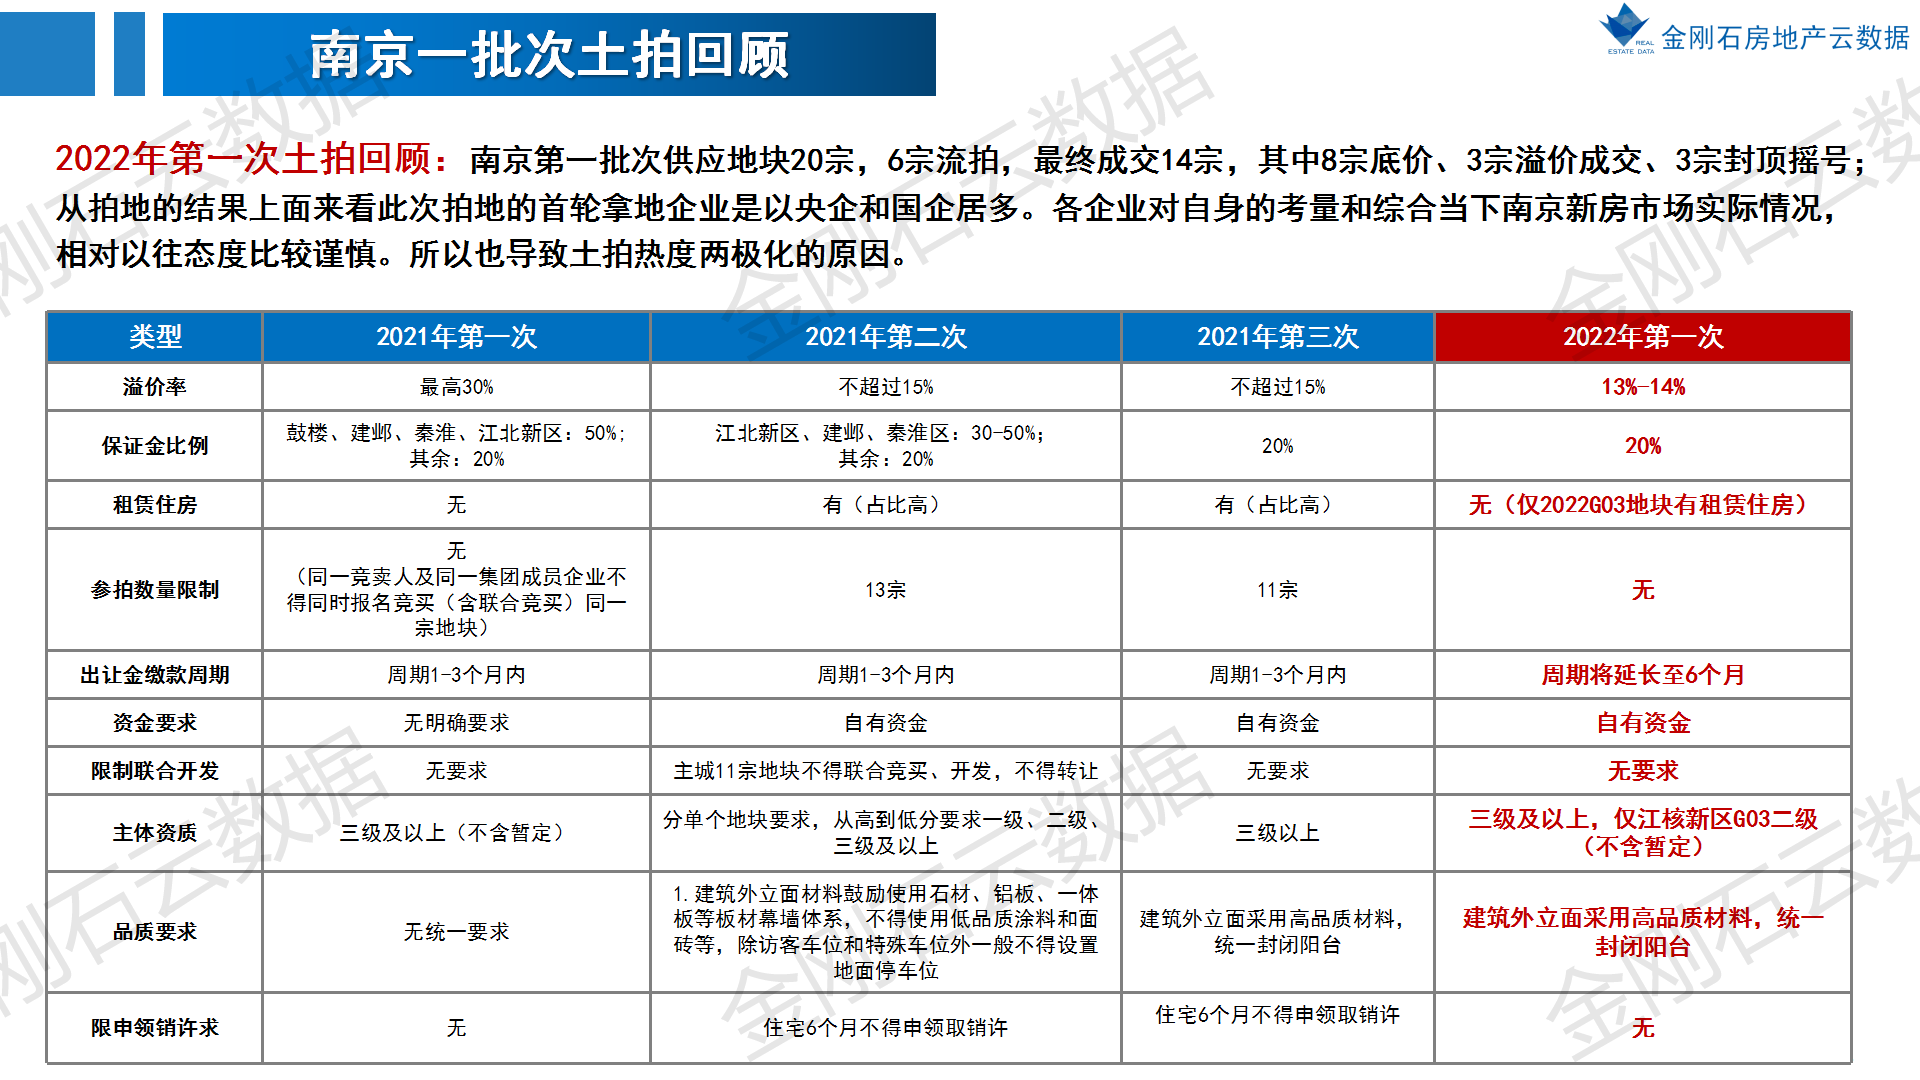 2022年南京第二批次地块 前期市场简报(图2)